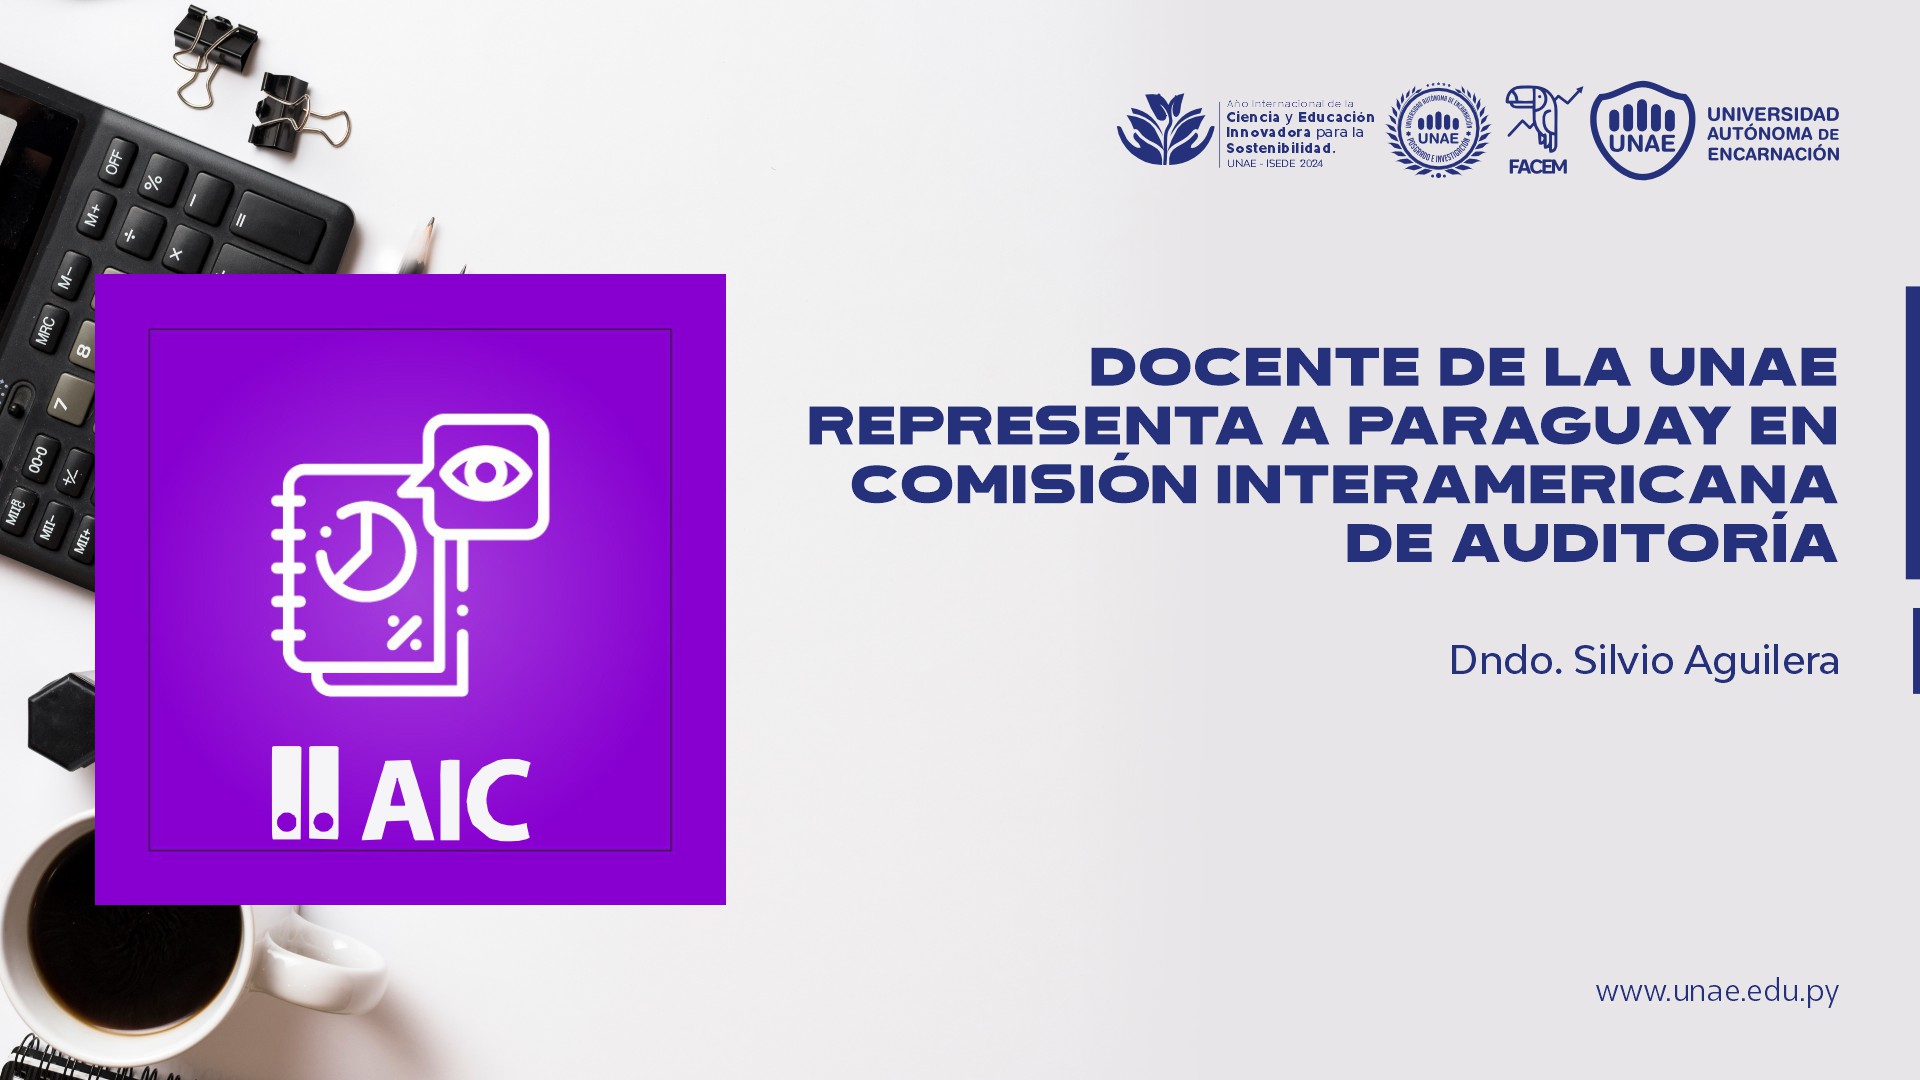 Docente de la UNAE representa a Paraguay en Comisión Interamericana de Auditoría